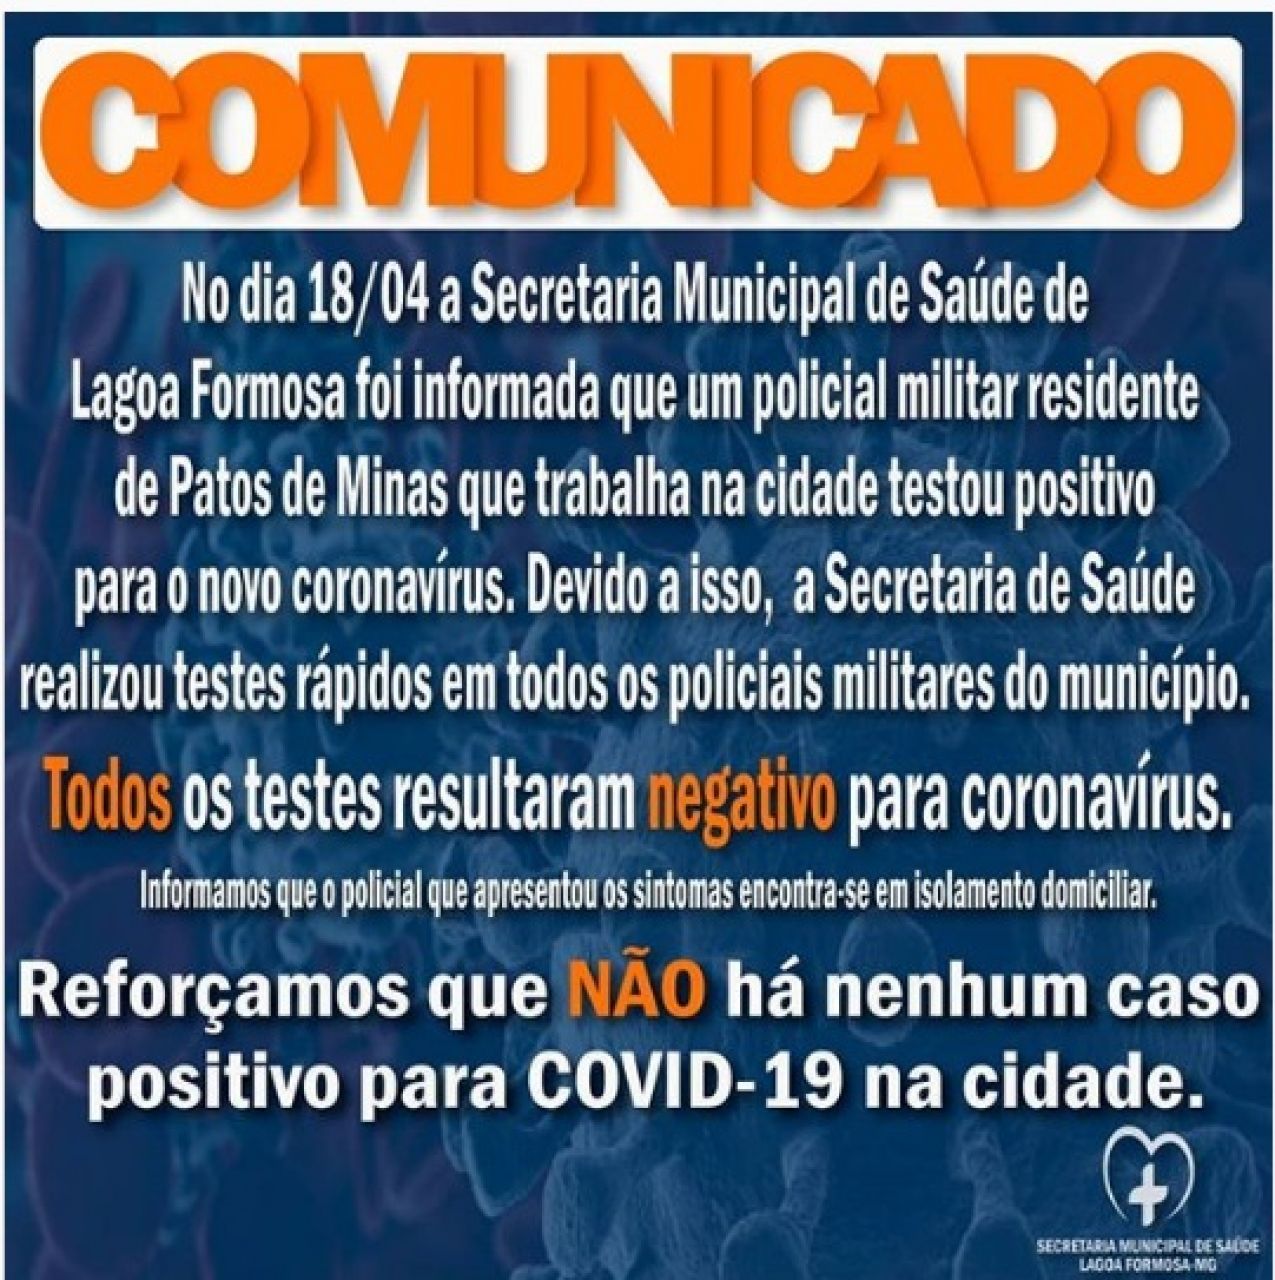 PM de Lagoa Formosa passa por exames de Covid-19 após militar de Patos de Minas que trabalha na cidade testar positivo